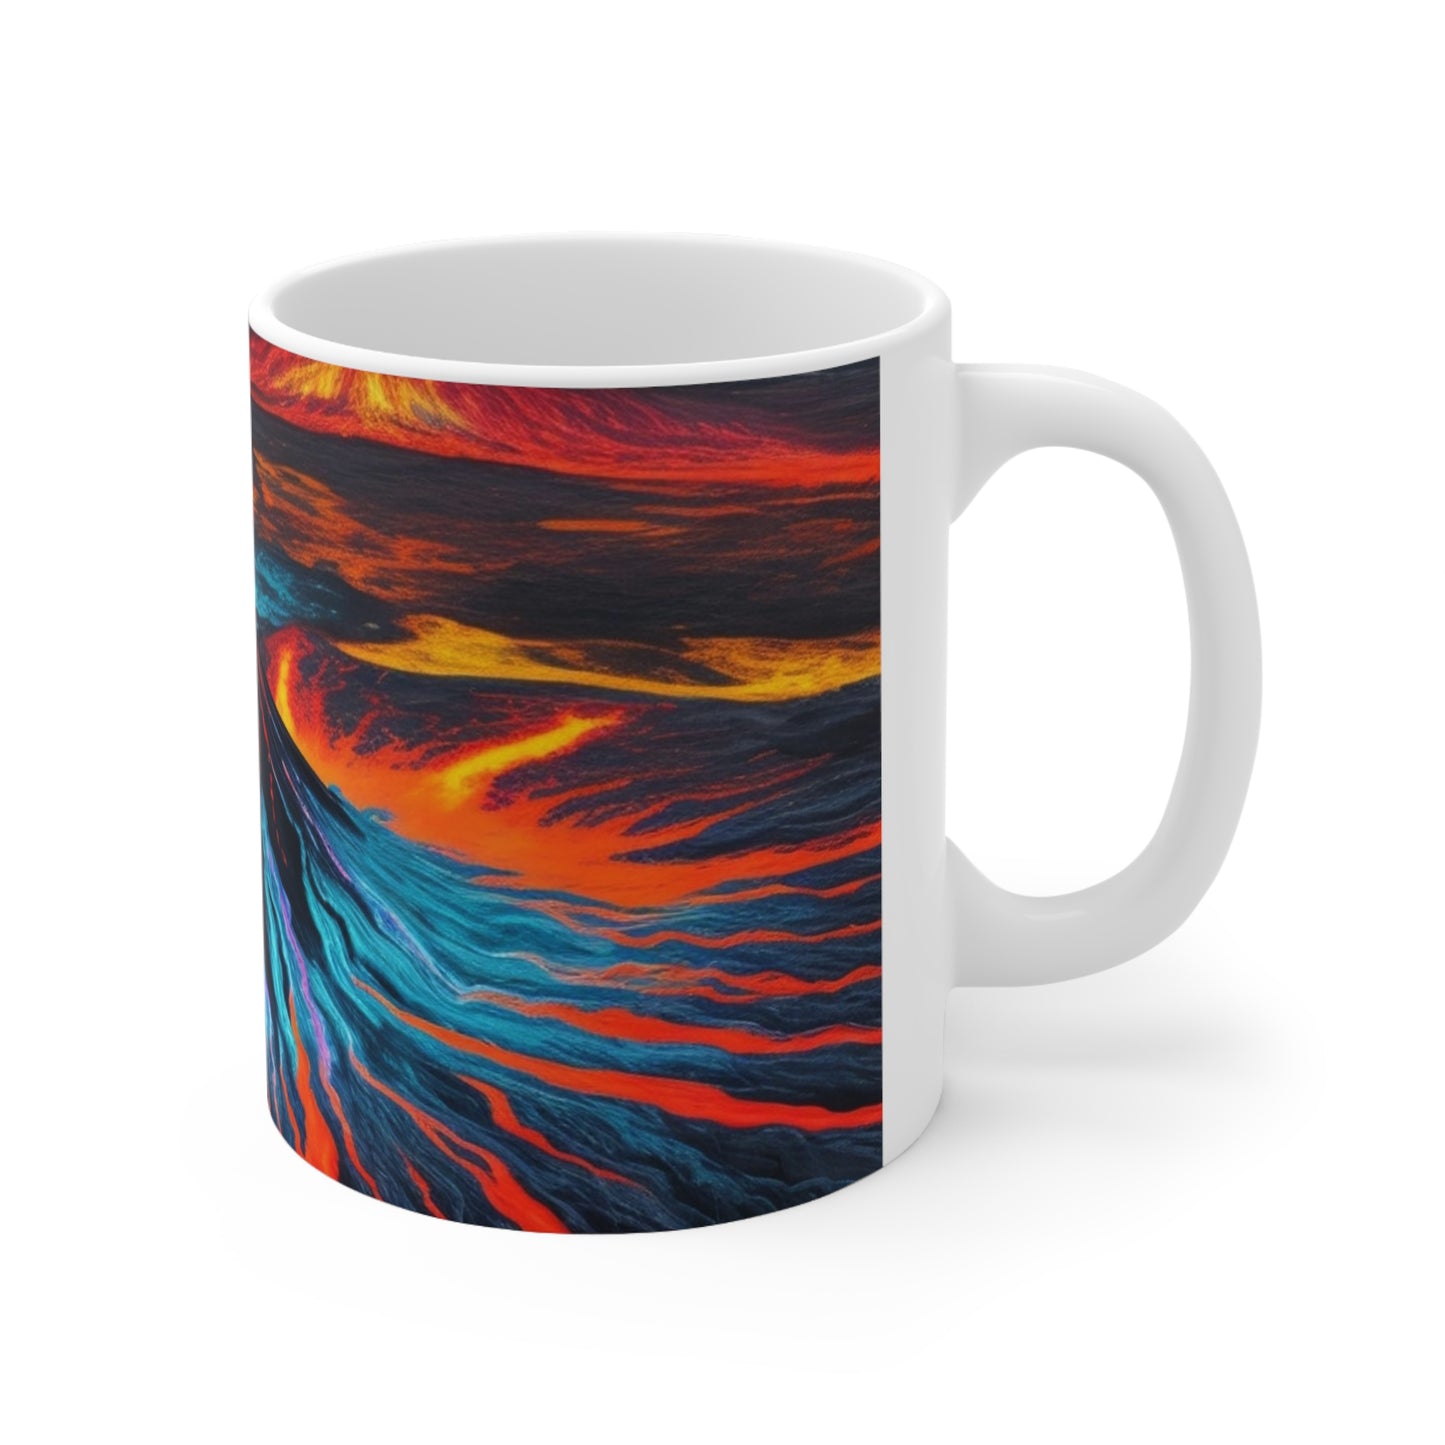 Colourful Volcano Mug - Ceramic Coffee Mug 11oz